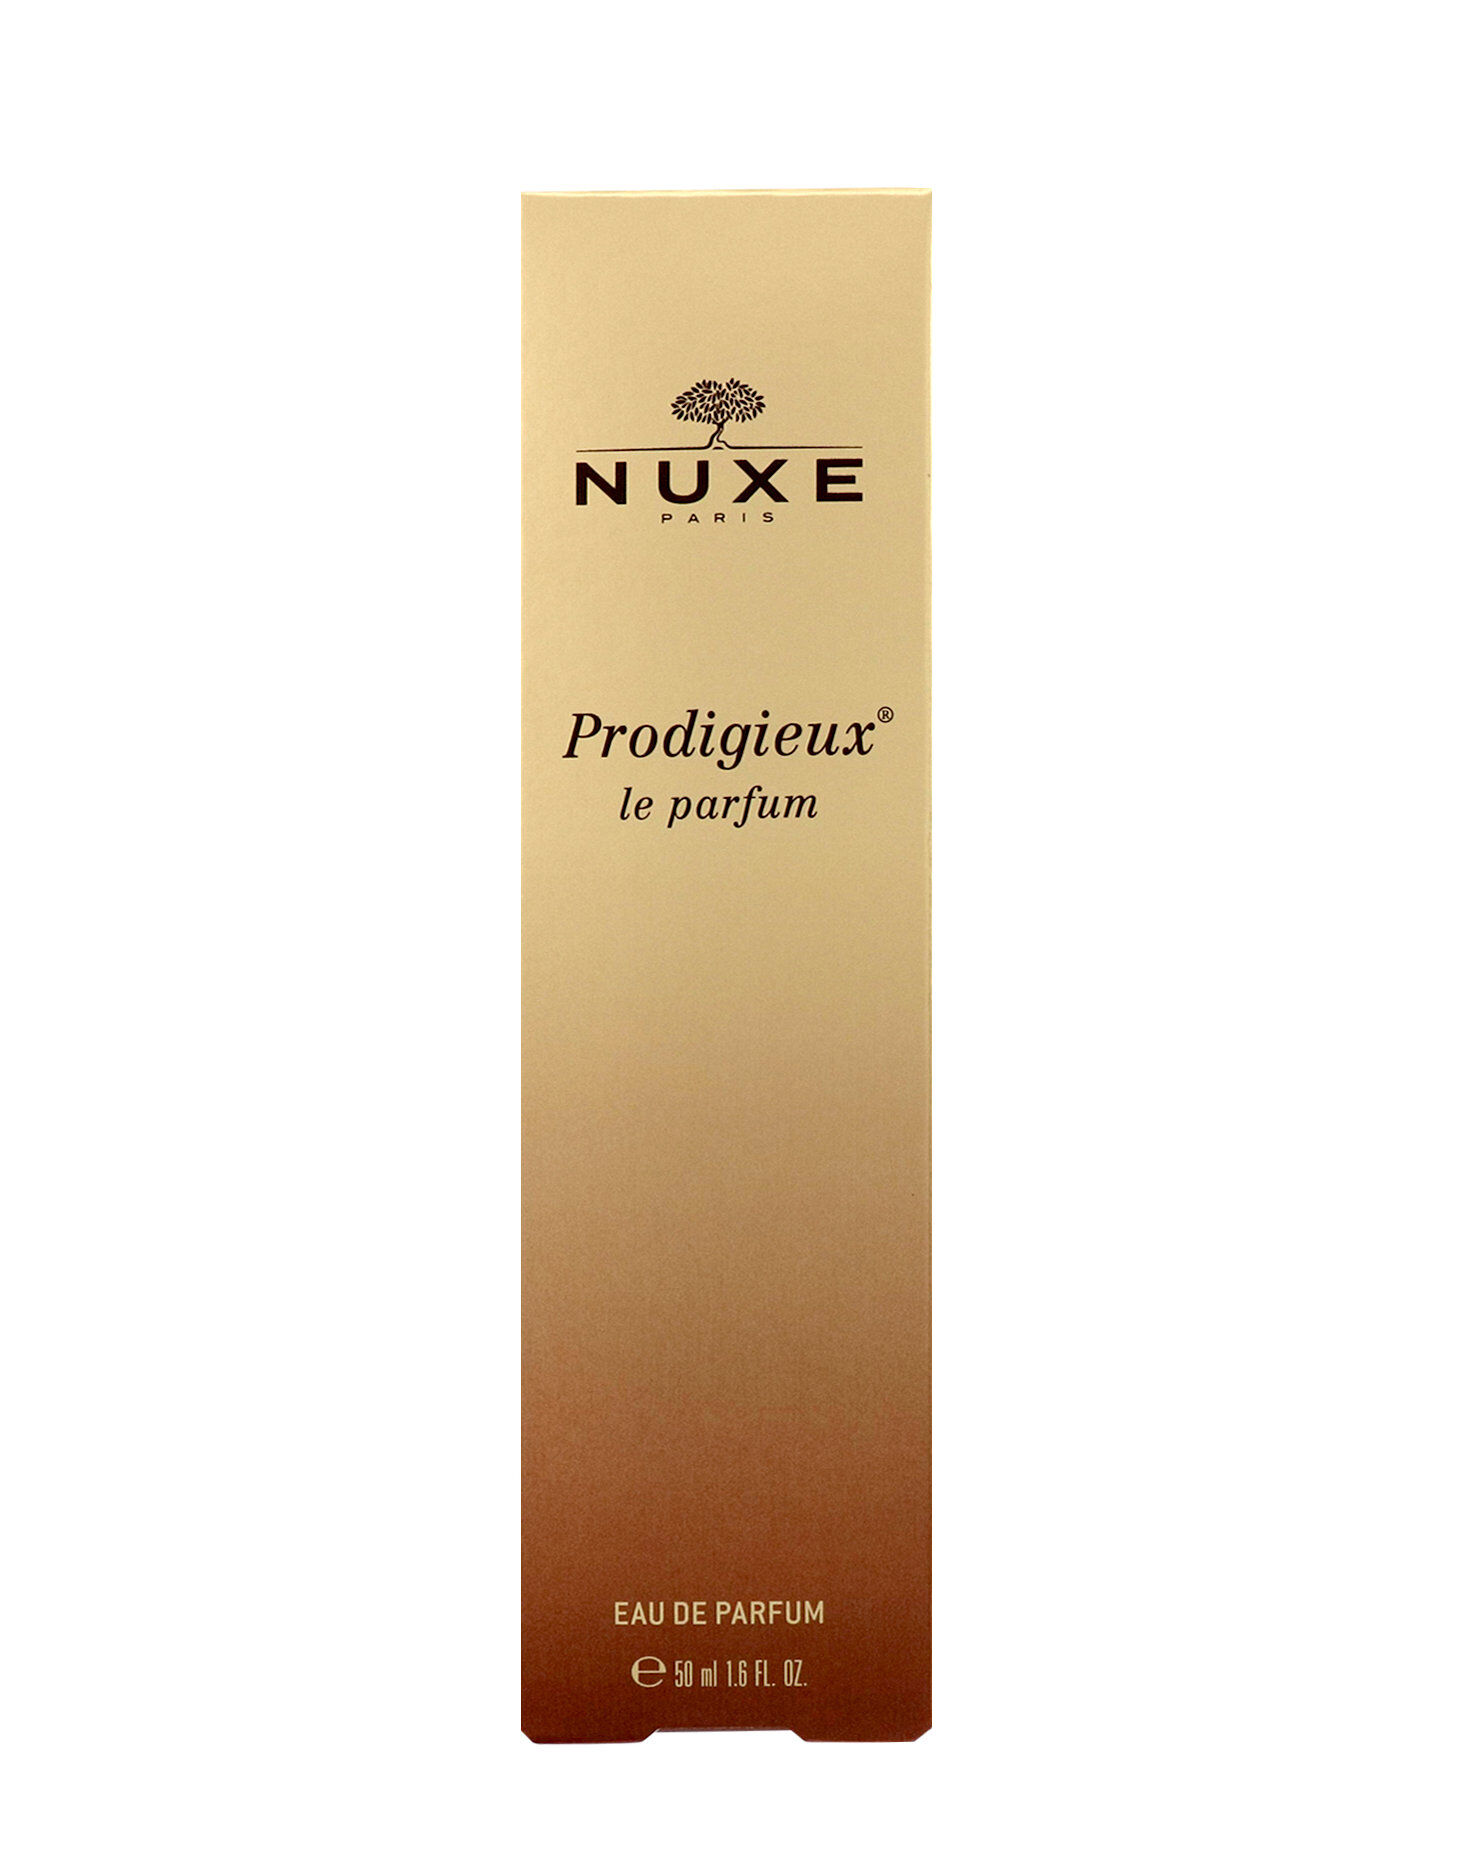 NUXE Prodigieux Le Parfum - Eau De Parfum 50ml